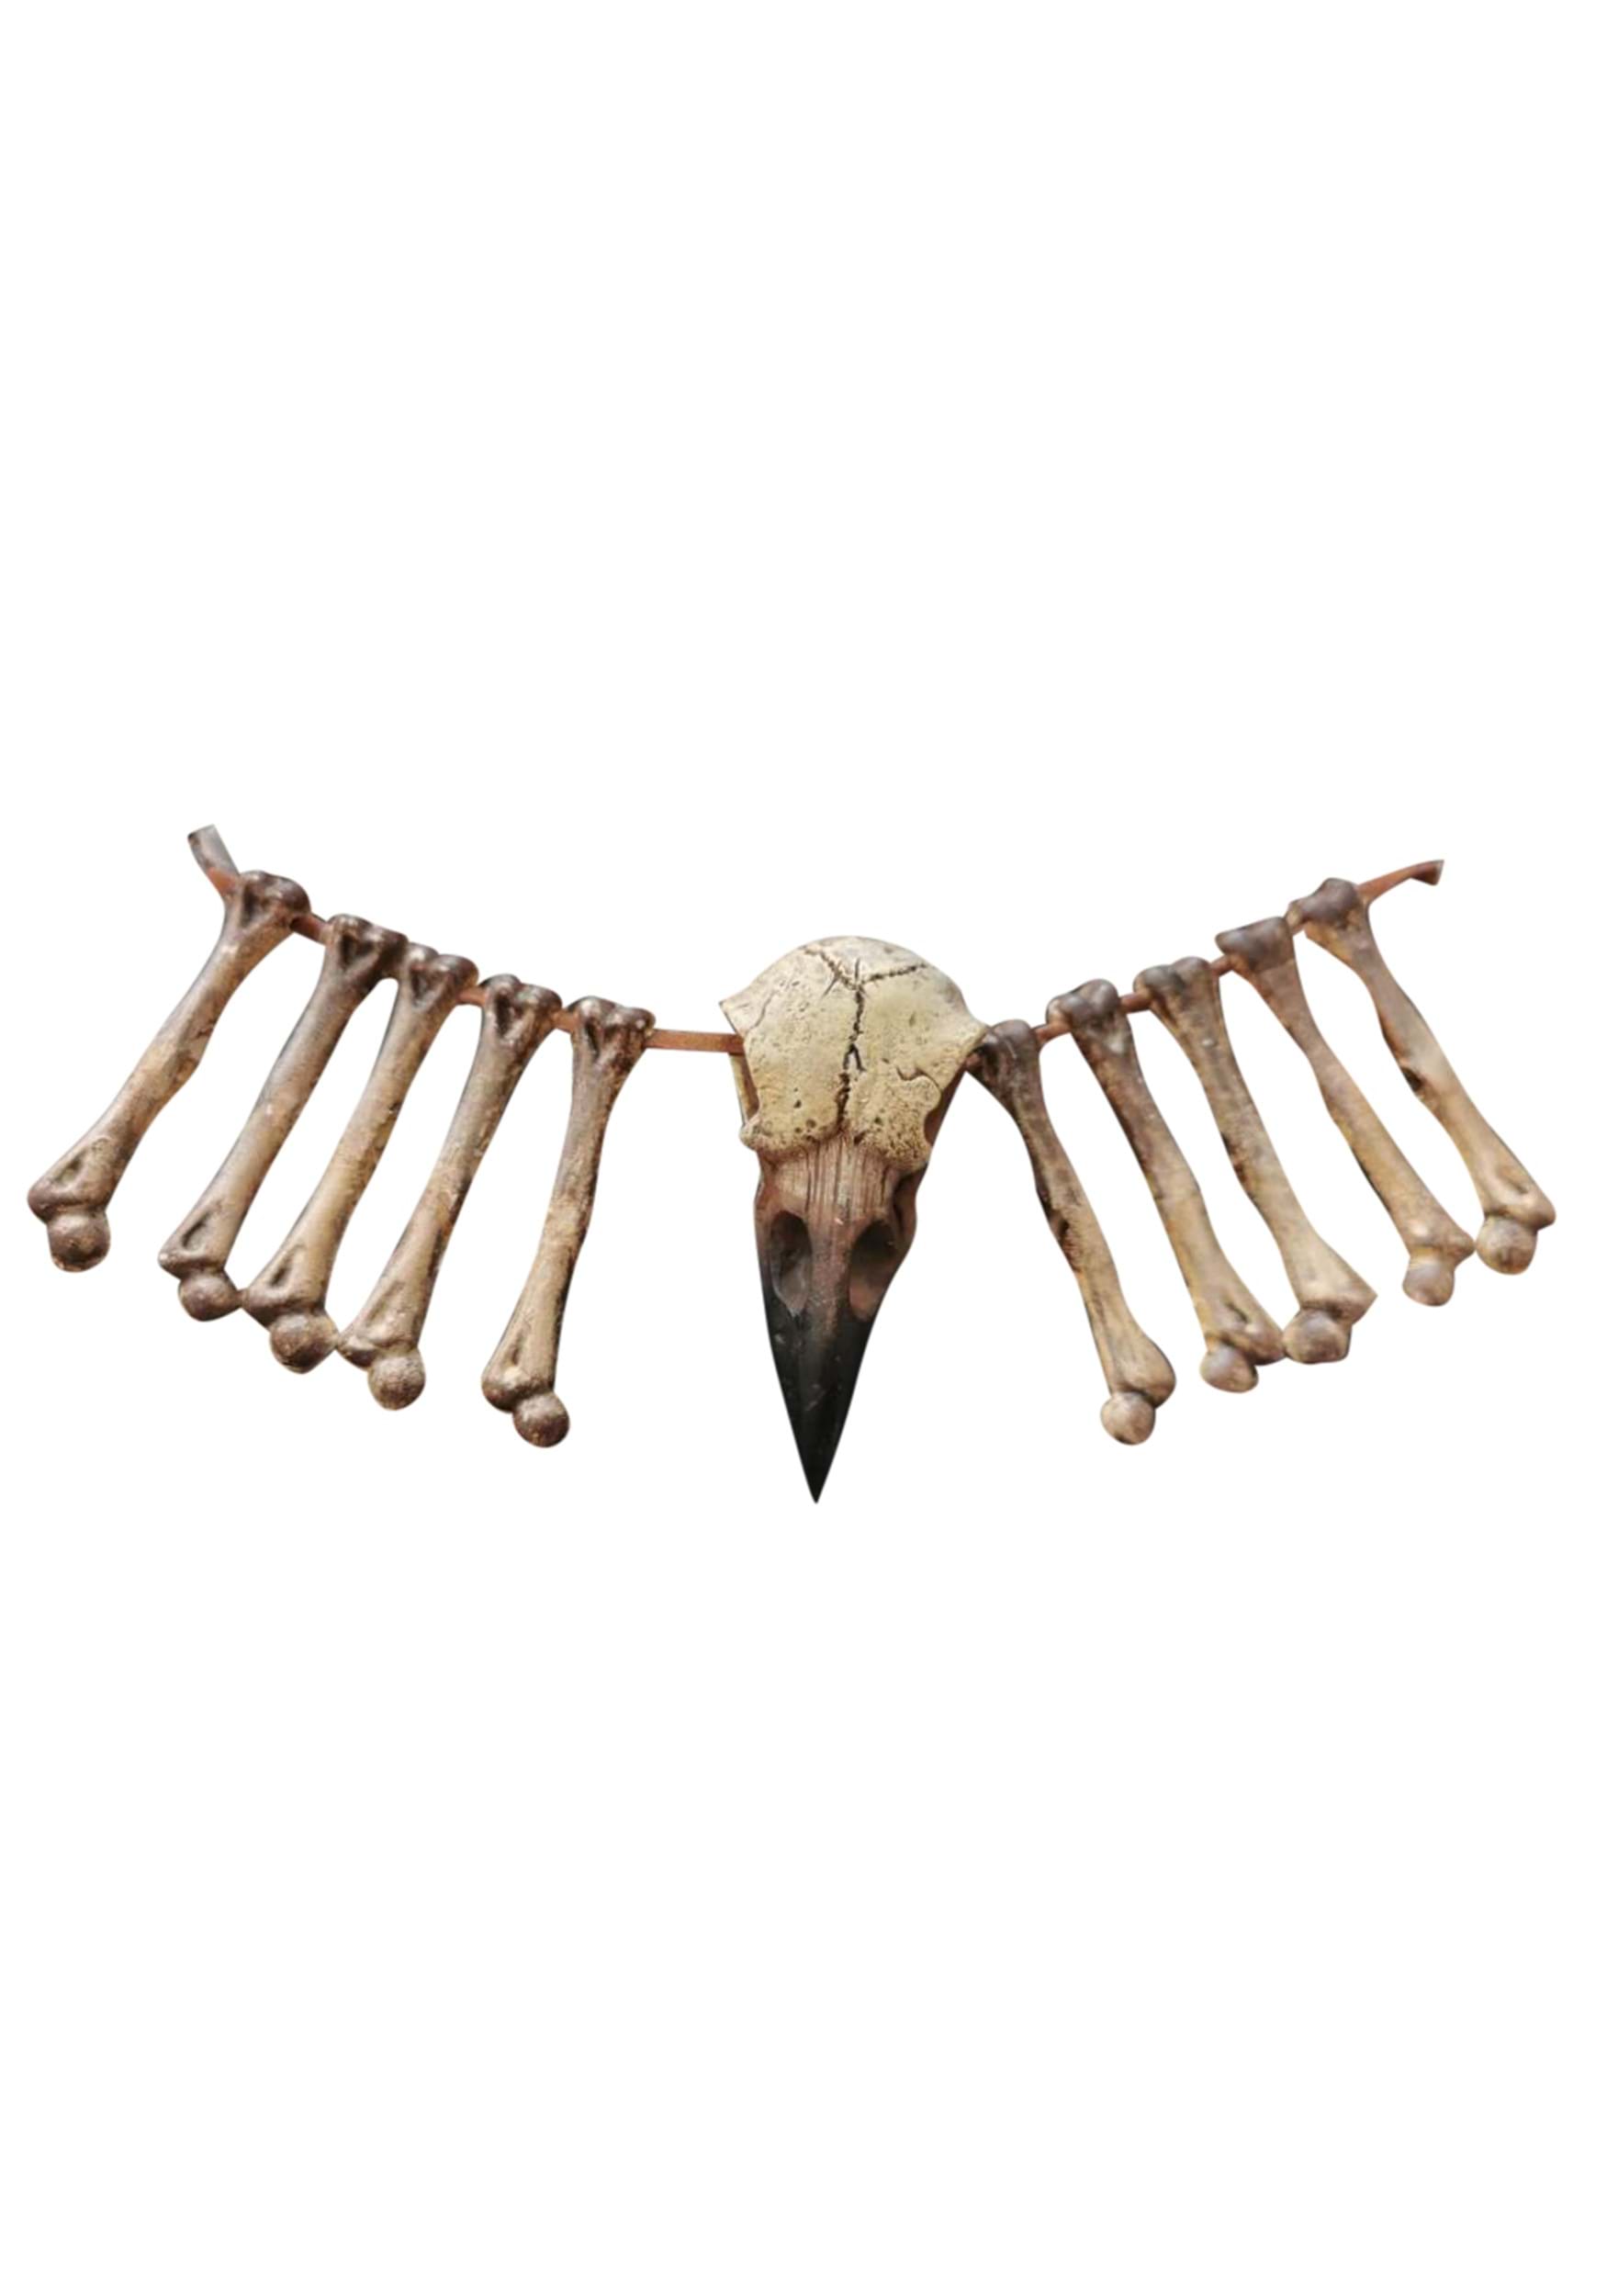 15″ Bird Beak and Bones Necklace